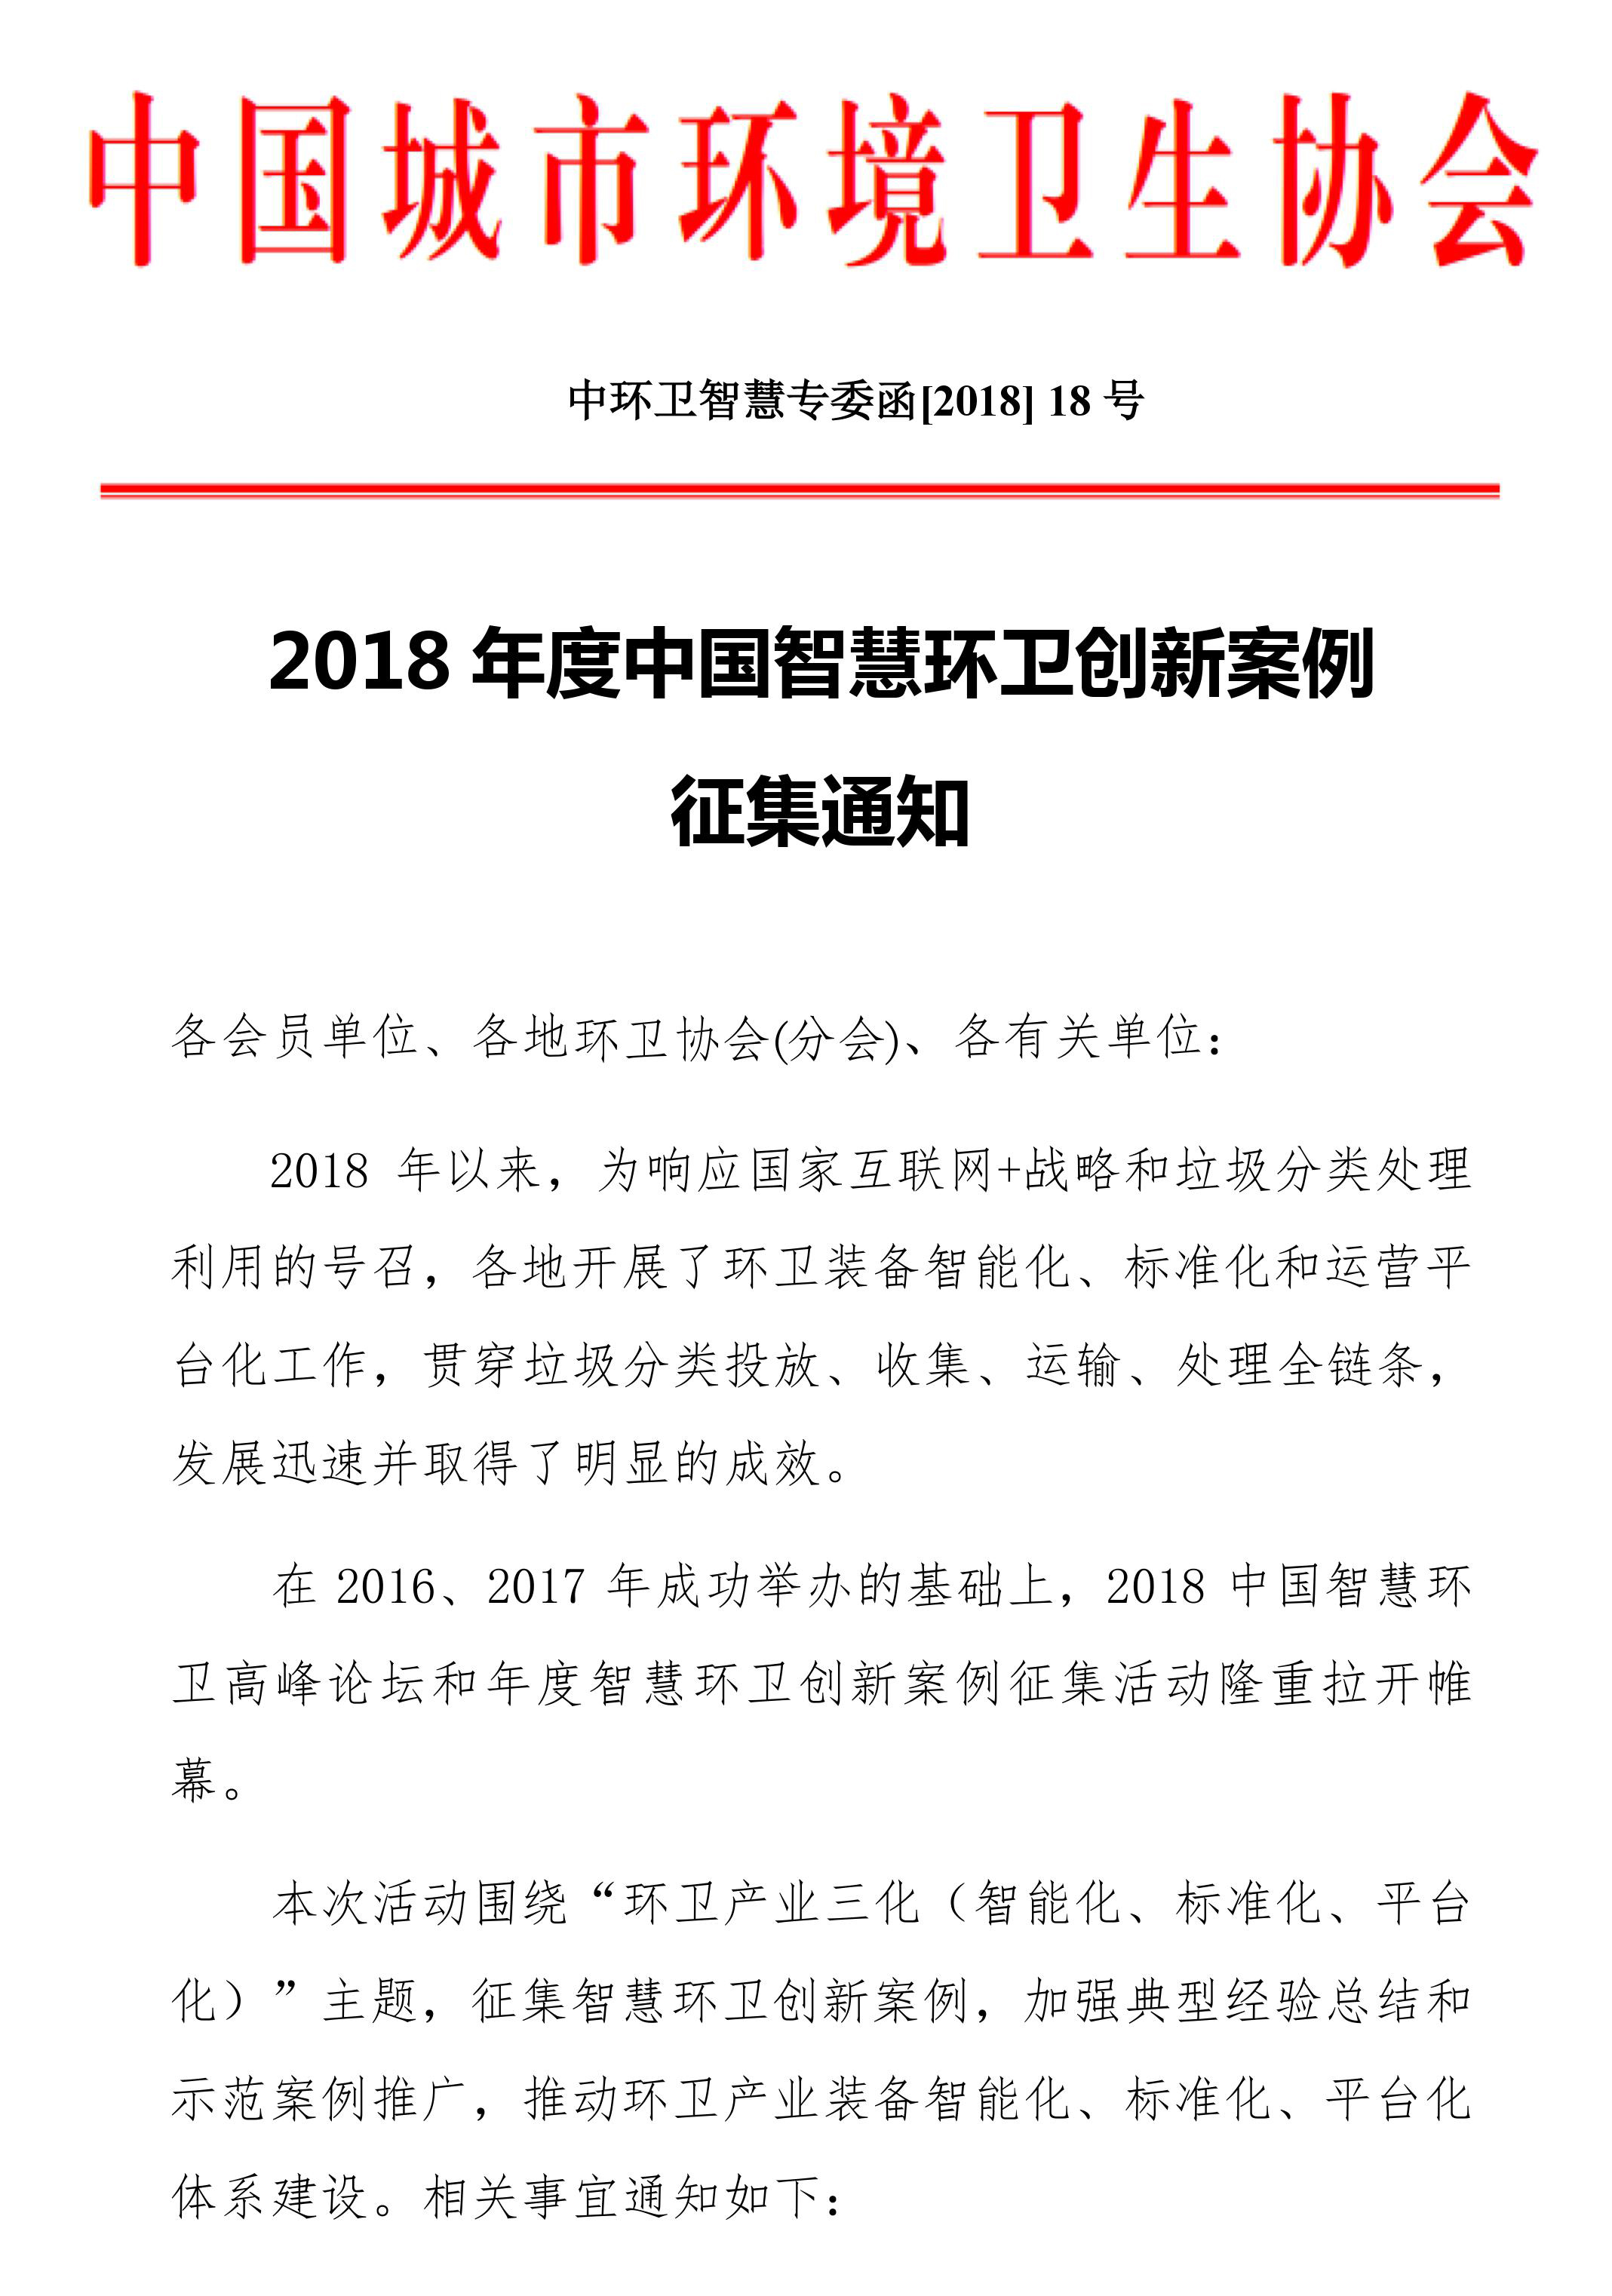 2018年度中国智慧环卫创新案例征集通知